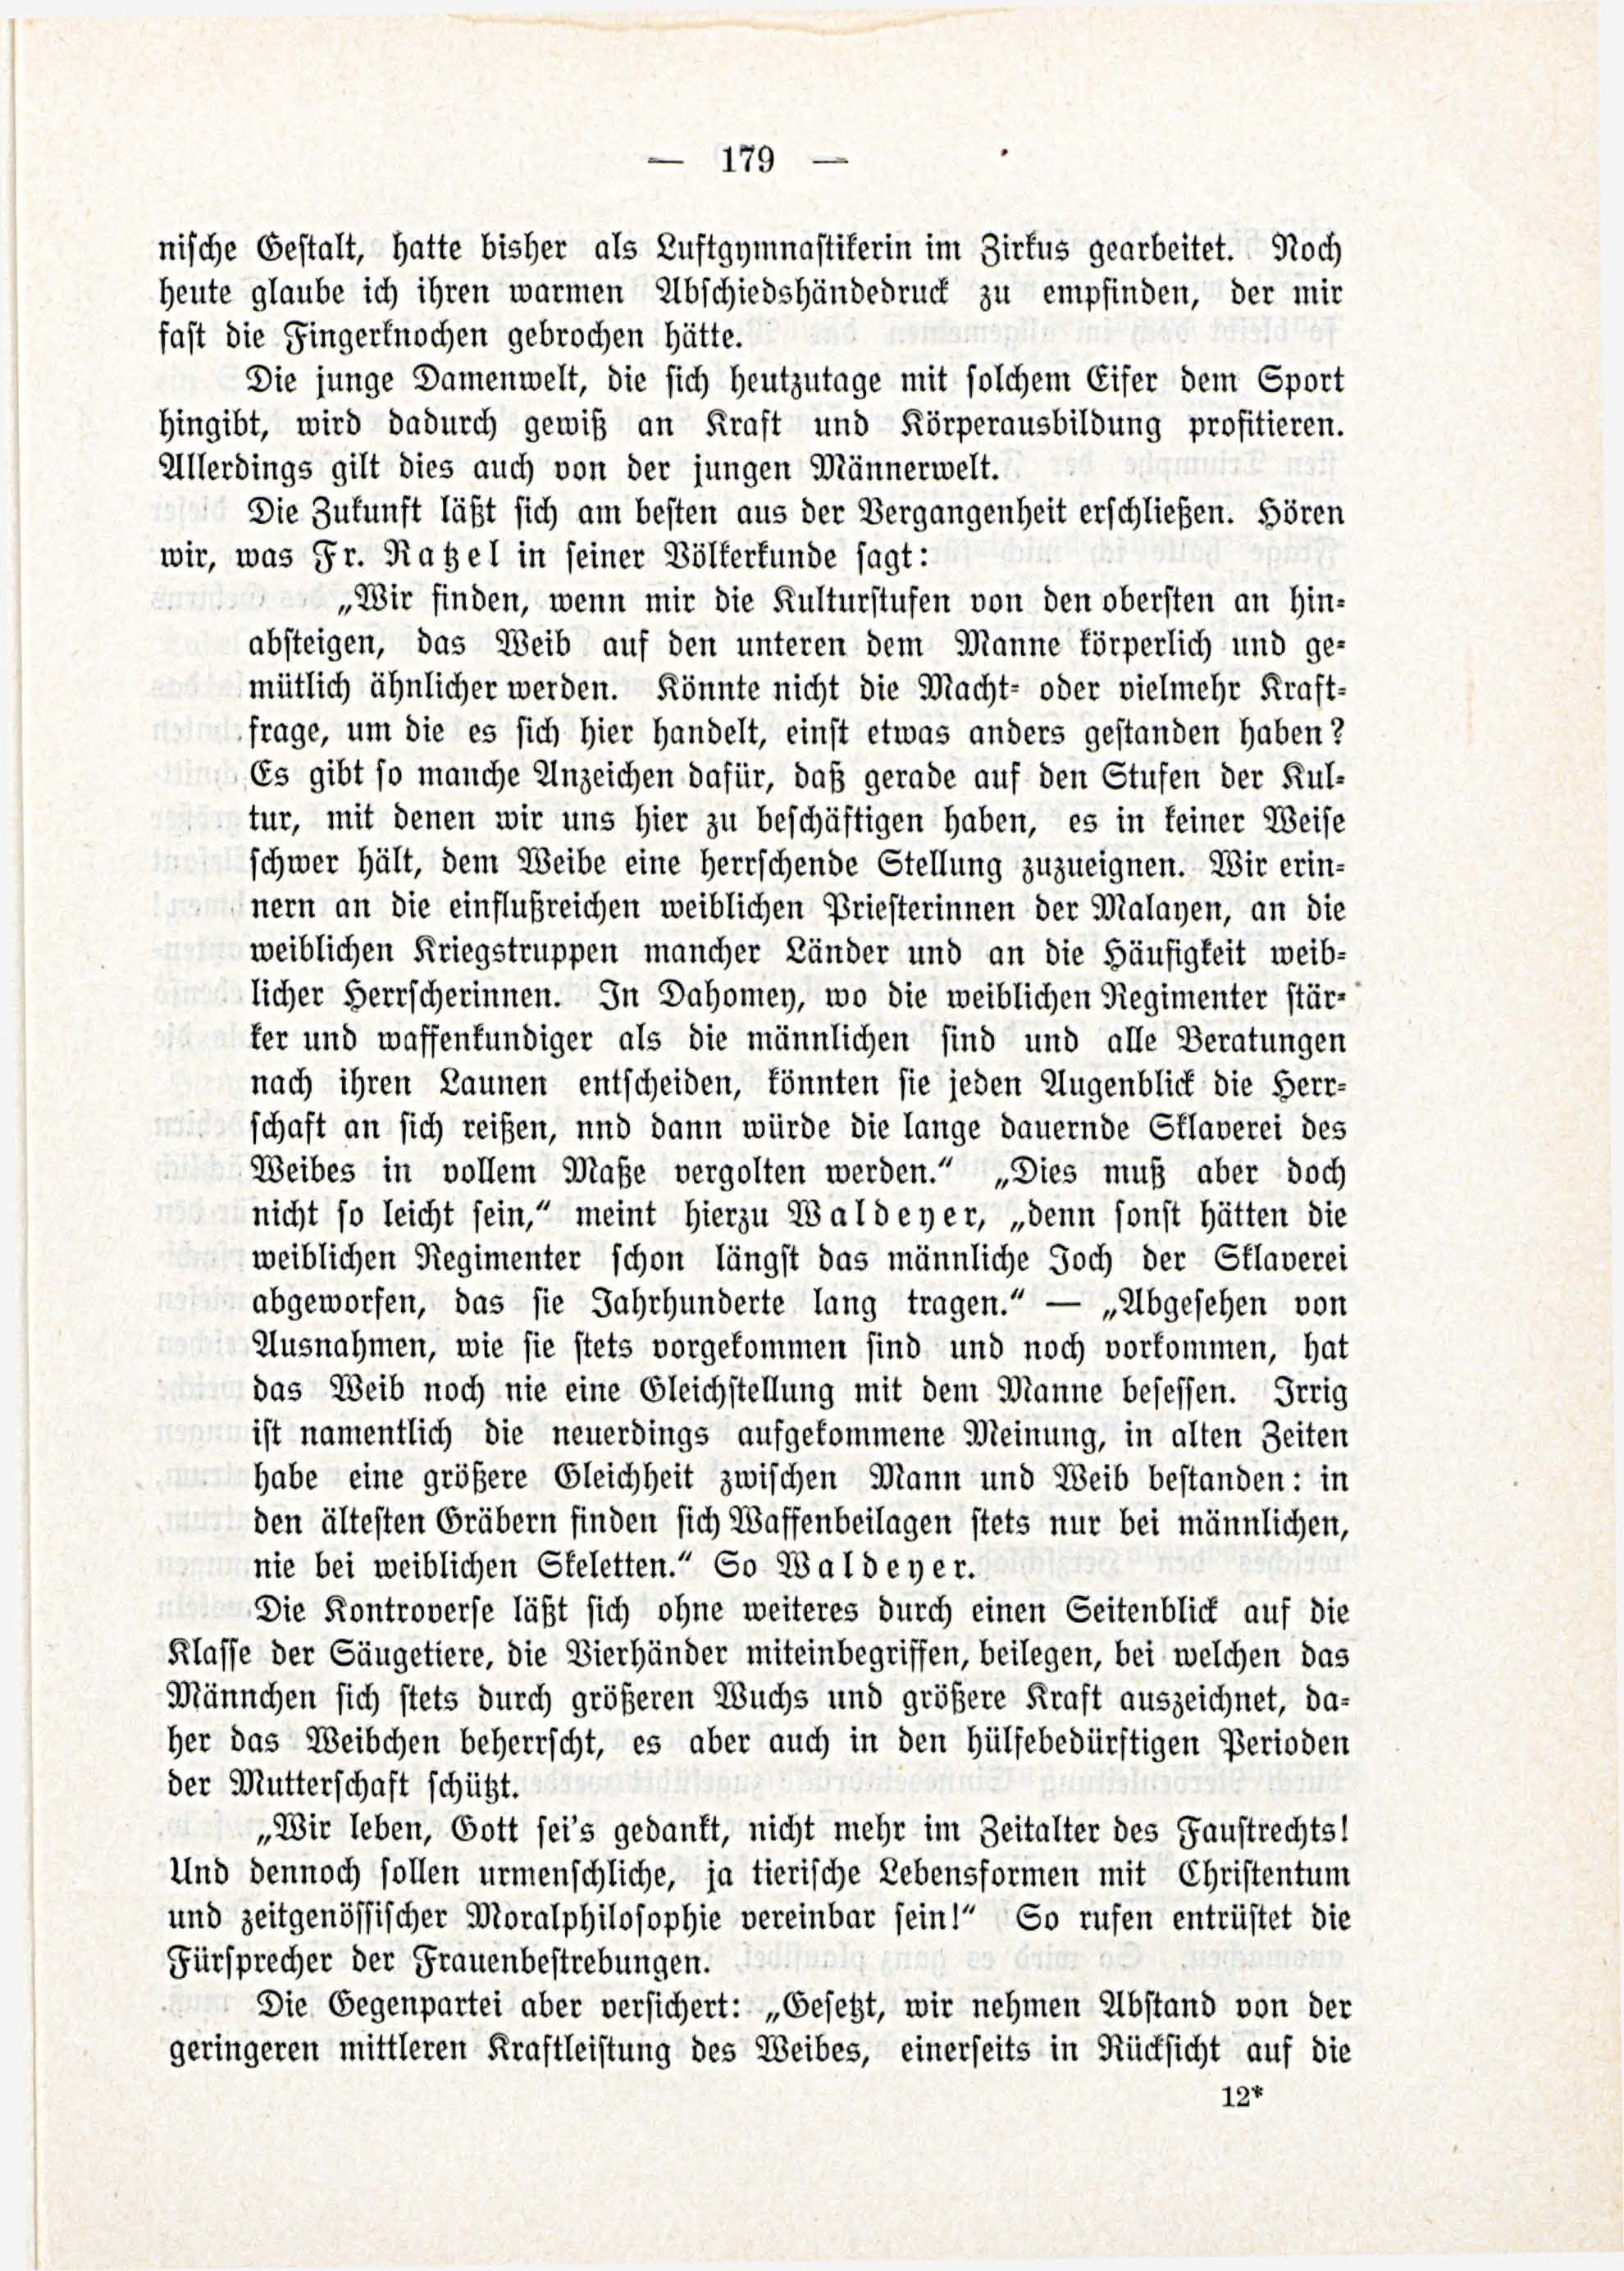 Deutsche Monatsschrift für Russland [3/03] (1914) | 25. (179) Main body of text